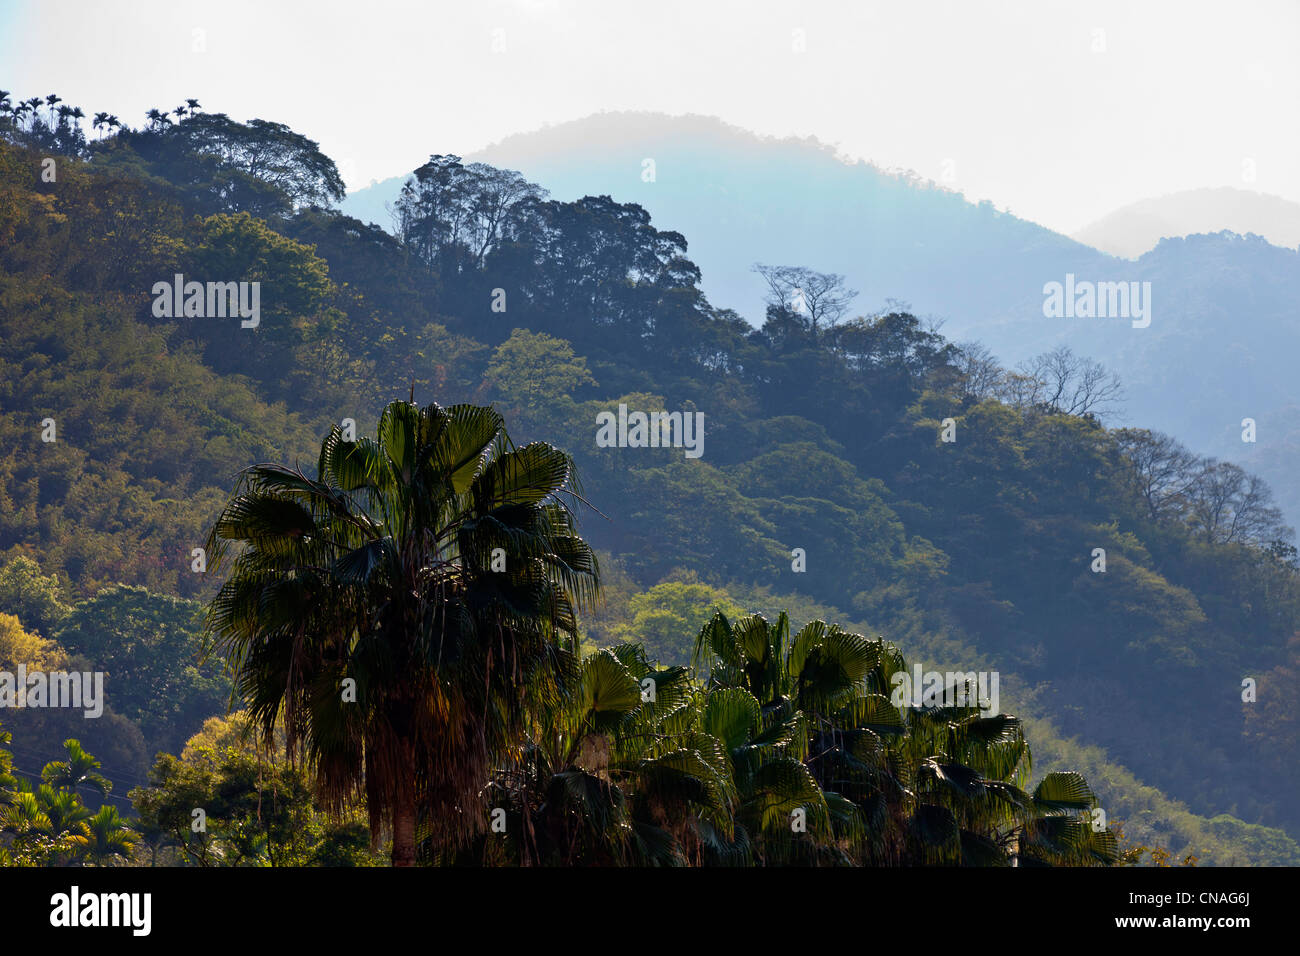 Hügel mit Bäumen und Palmen neben Route 21 in der Nähe von Shuili Taiwan. JMH5898 Stockfoto